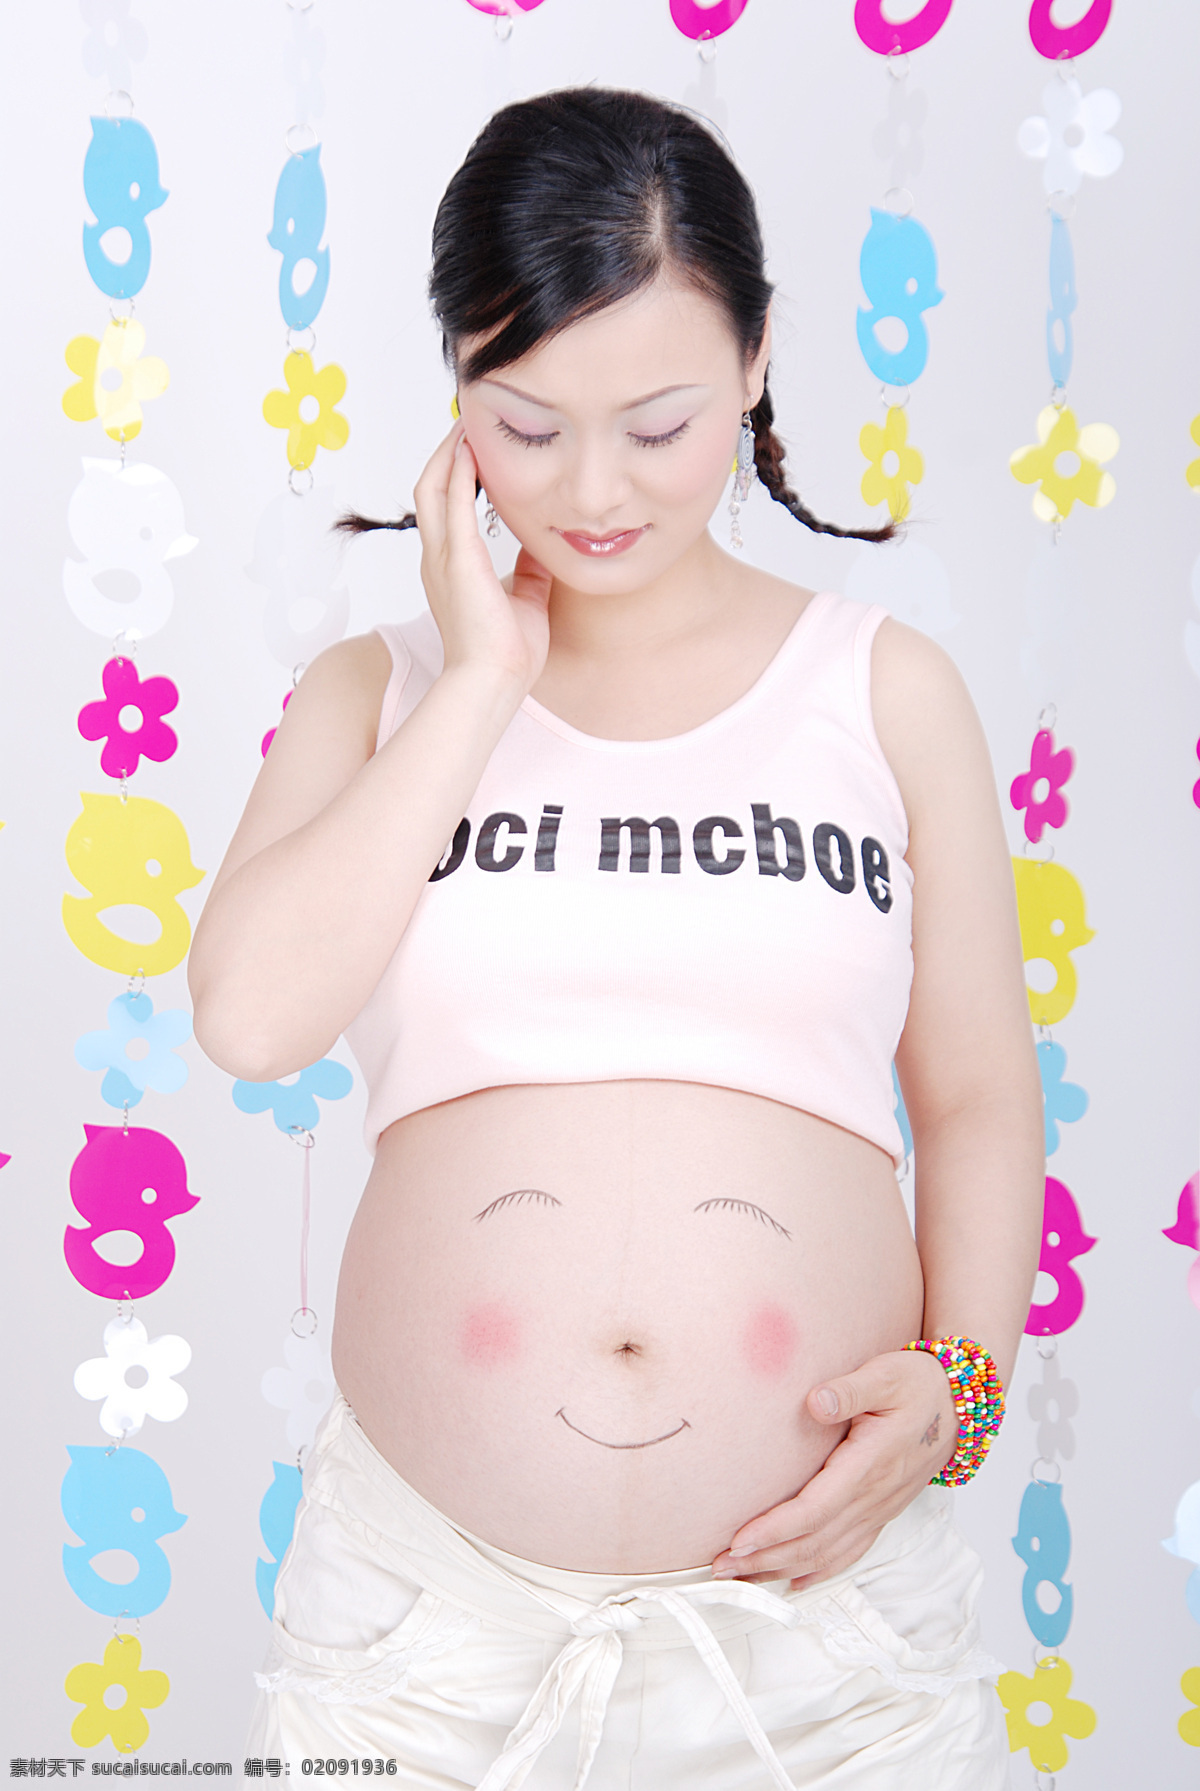 孕妈咪 怀孕妈妈 孕妇 大肚子 彩绘 高清晰 人物图库 女性女人 摄影图库